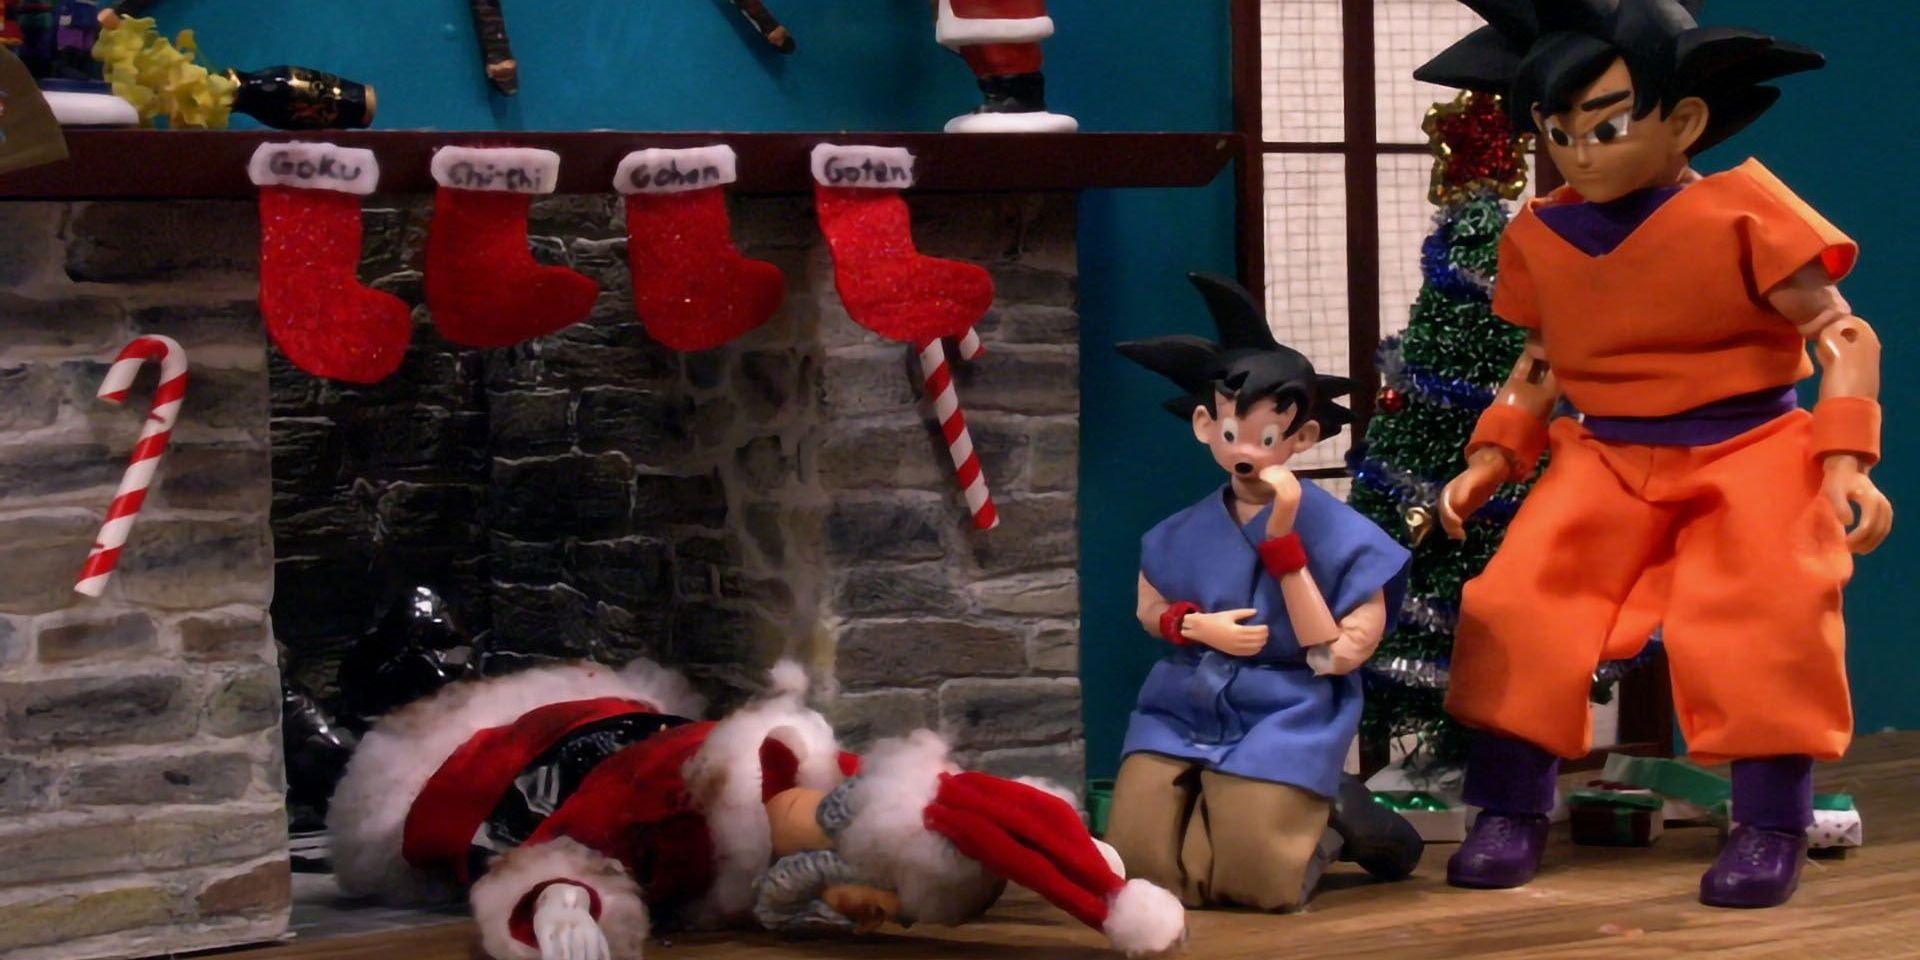 Goku, Goten, and Santa Claus in Robot Chicken